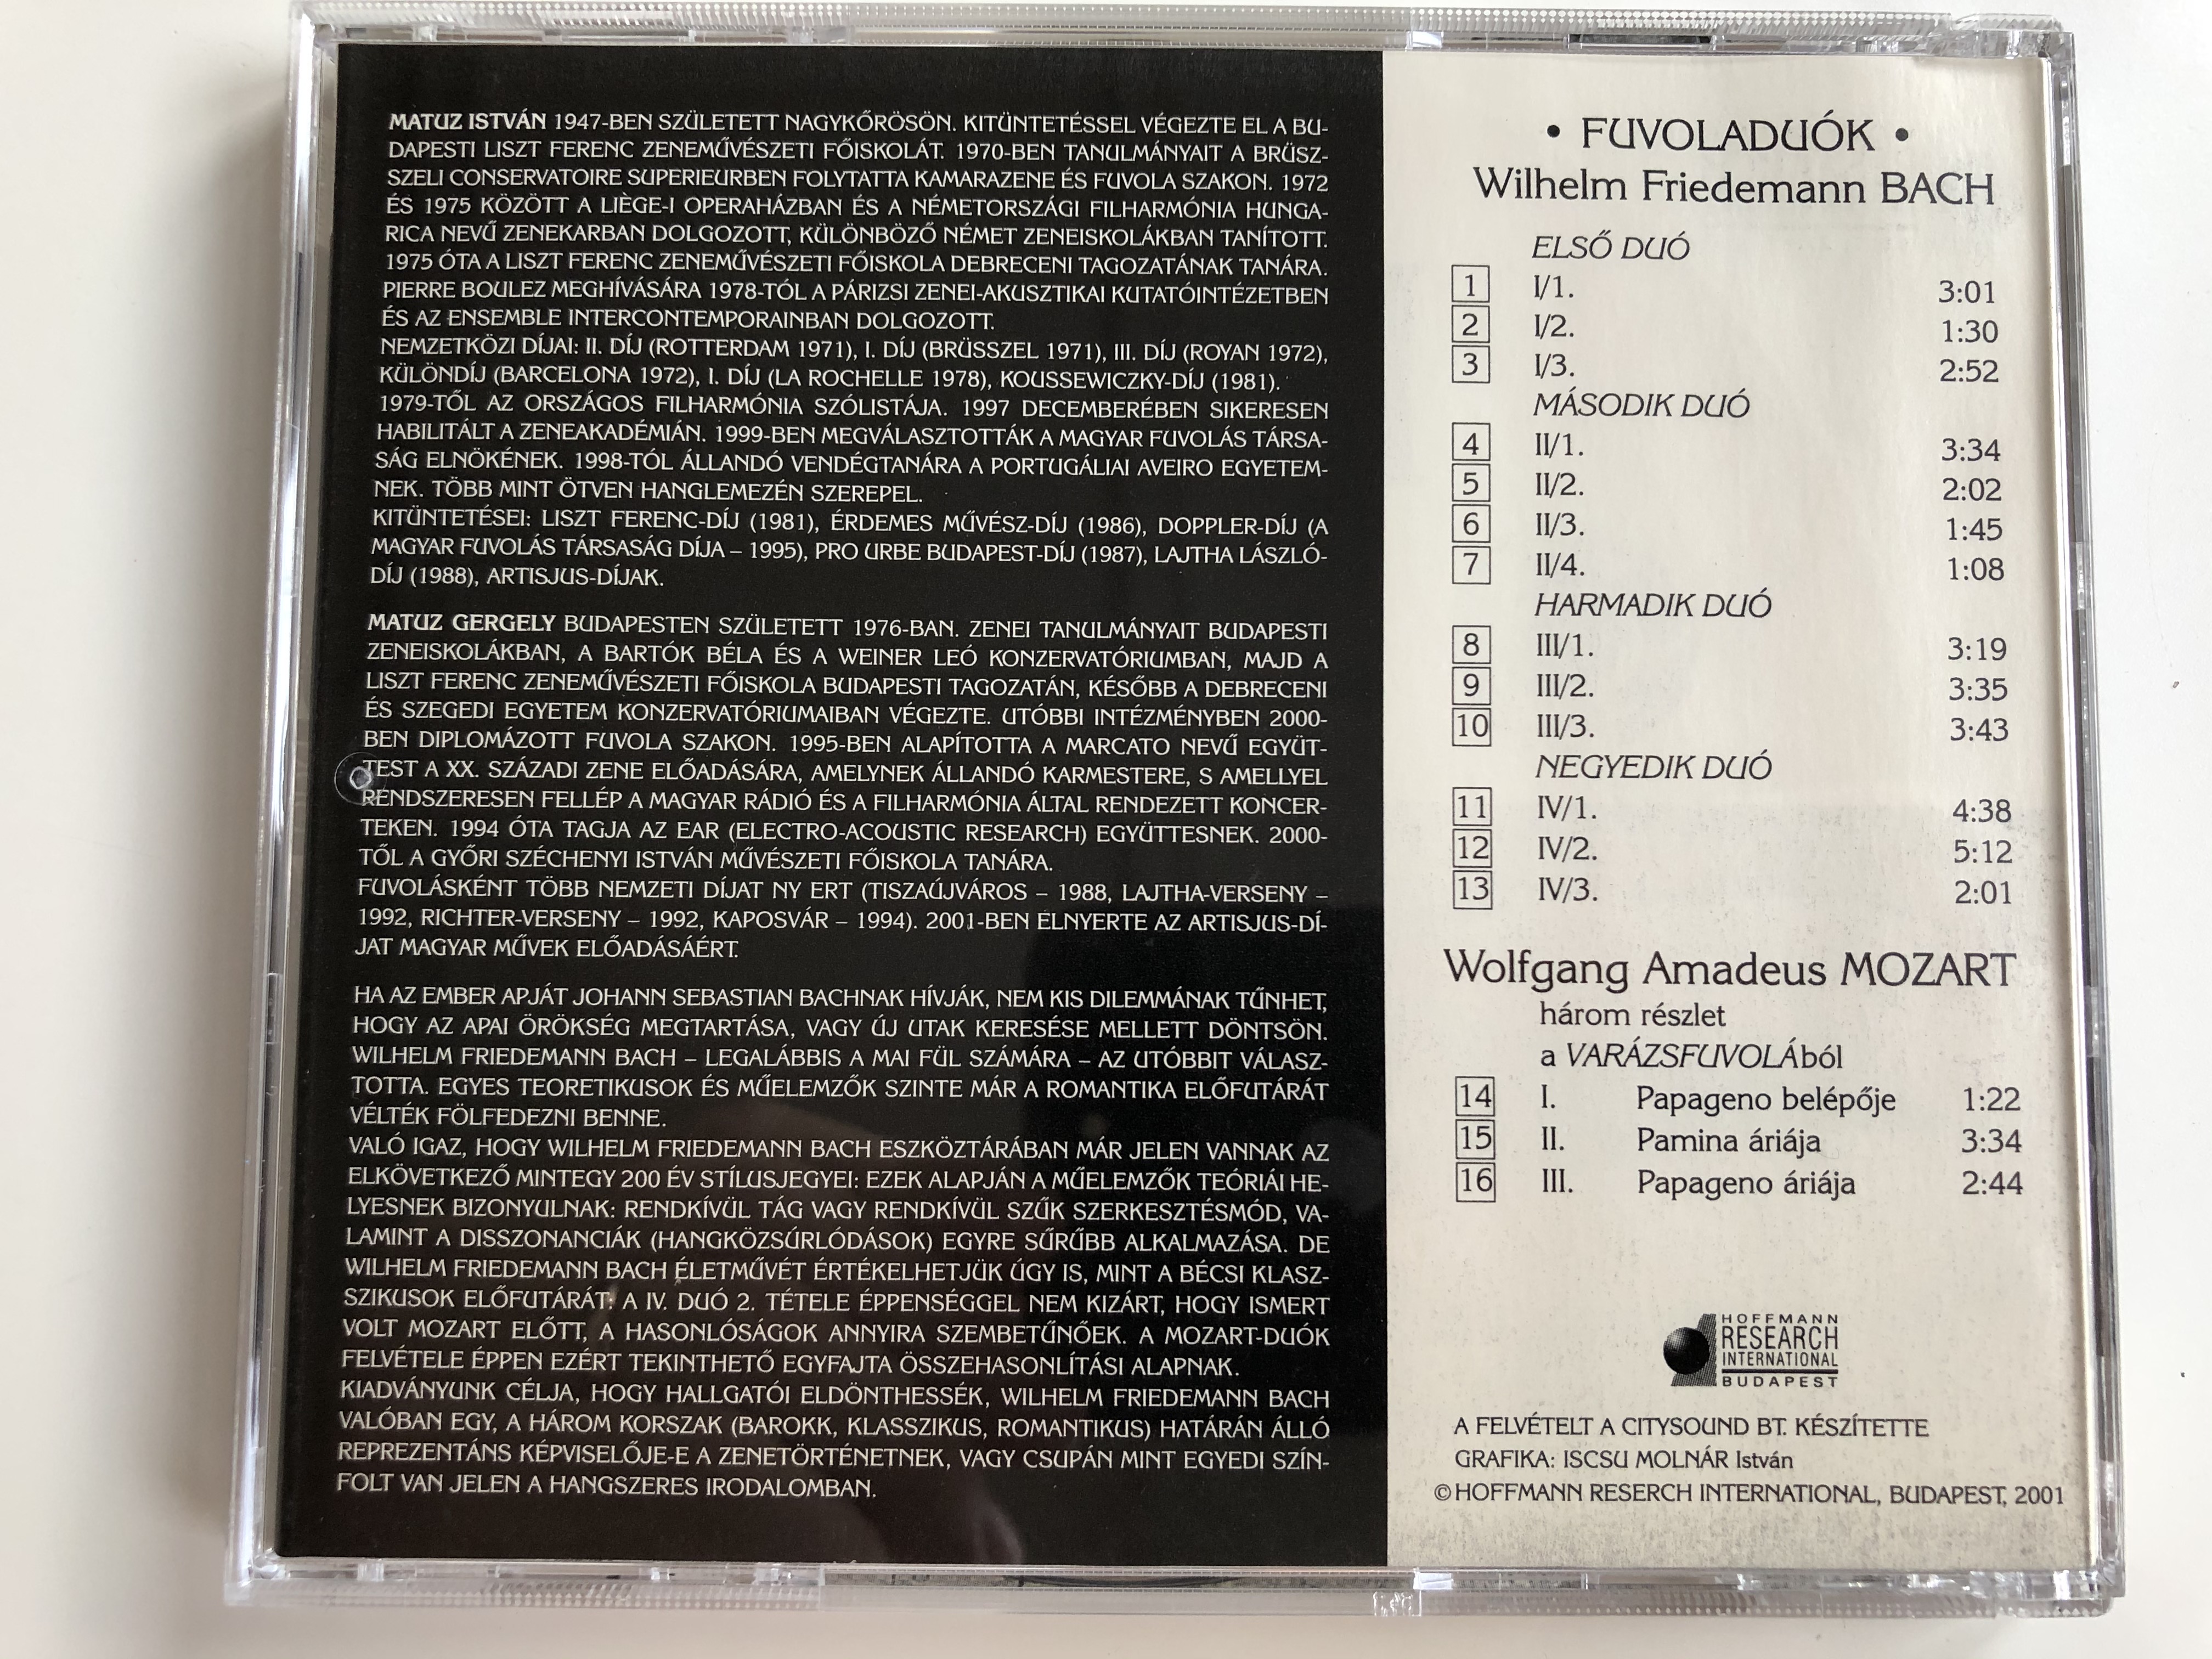 wilhelm-friedemann-bach-wolfgang-amadeus-mozart-flute-matuz-istvan-matuz-gergely-duo-hoffmann-reserch-international-audio-cd-2001-4-.jpg